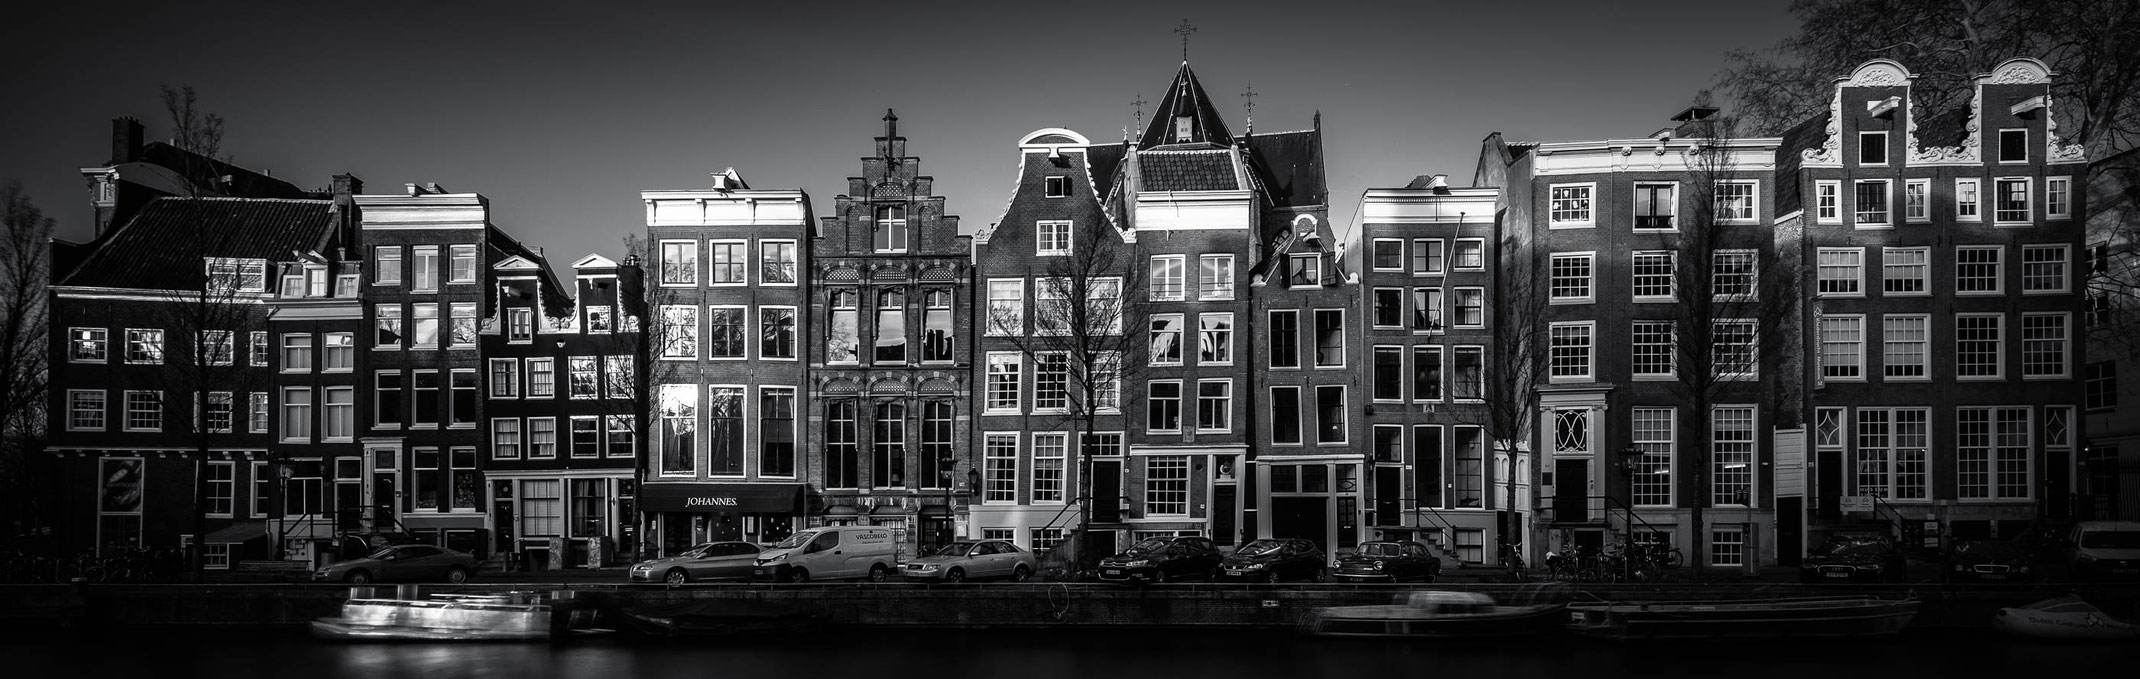 Herengracht in Amsterdam in schwarz-weiß